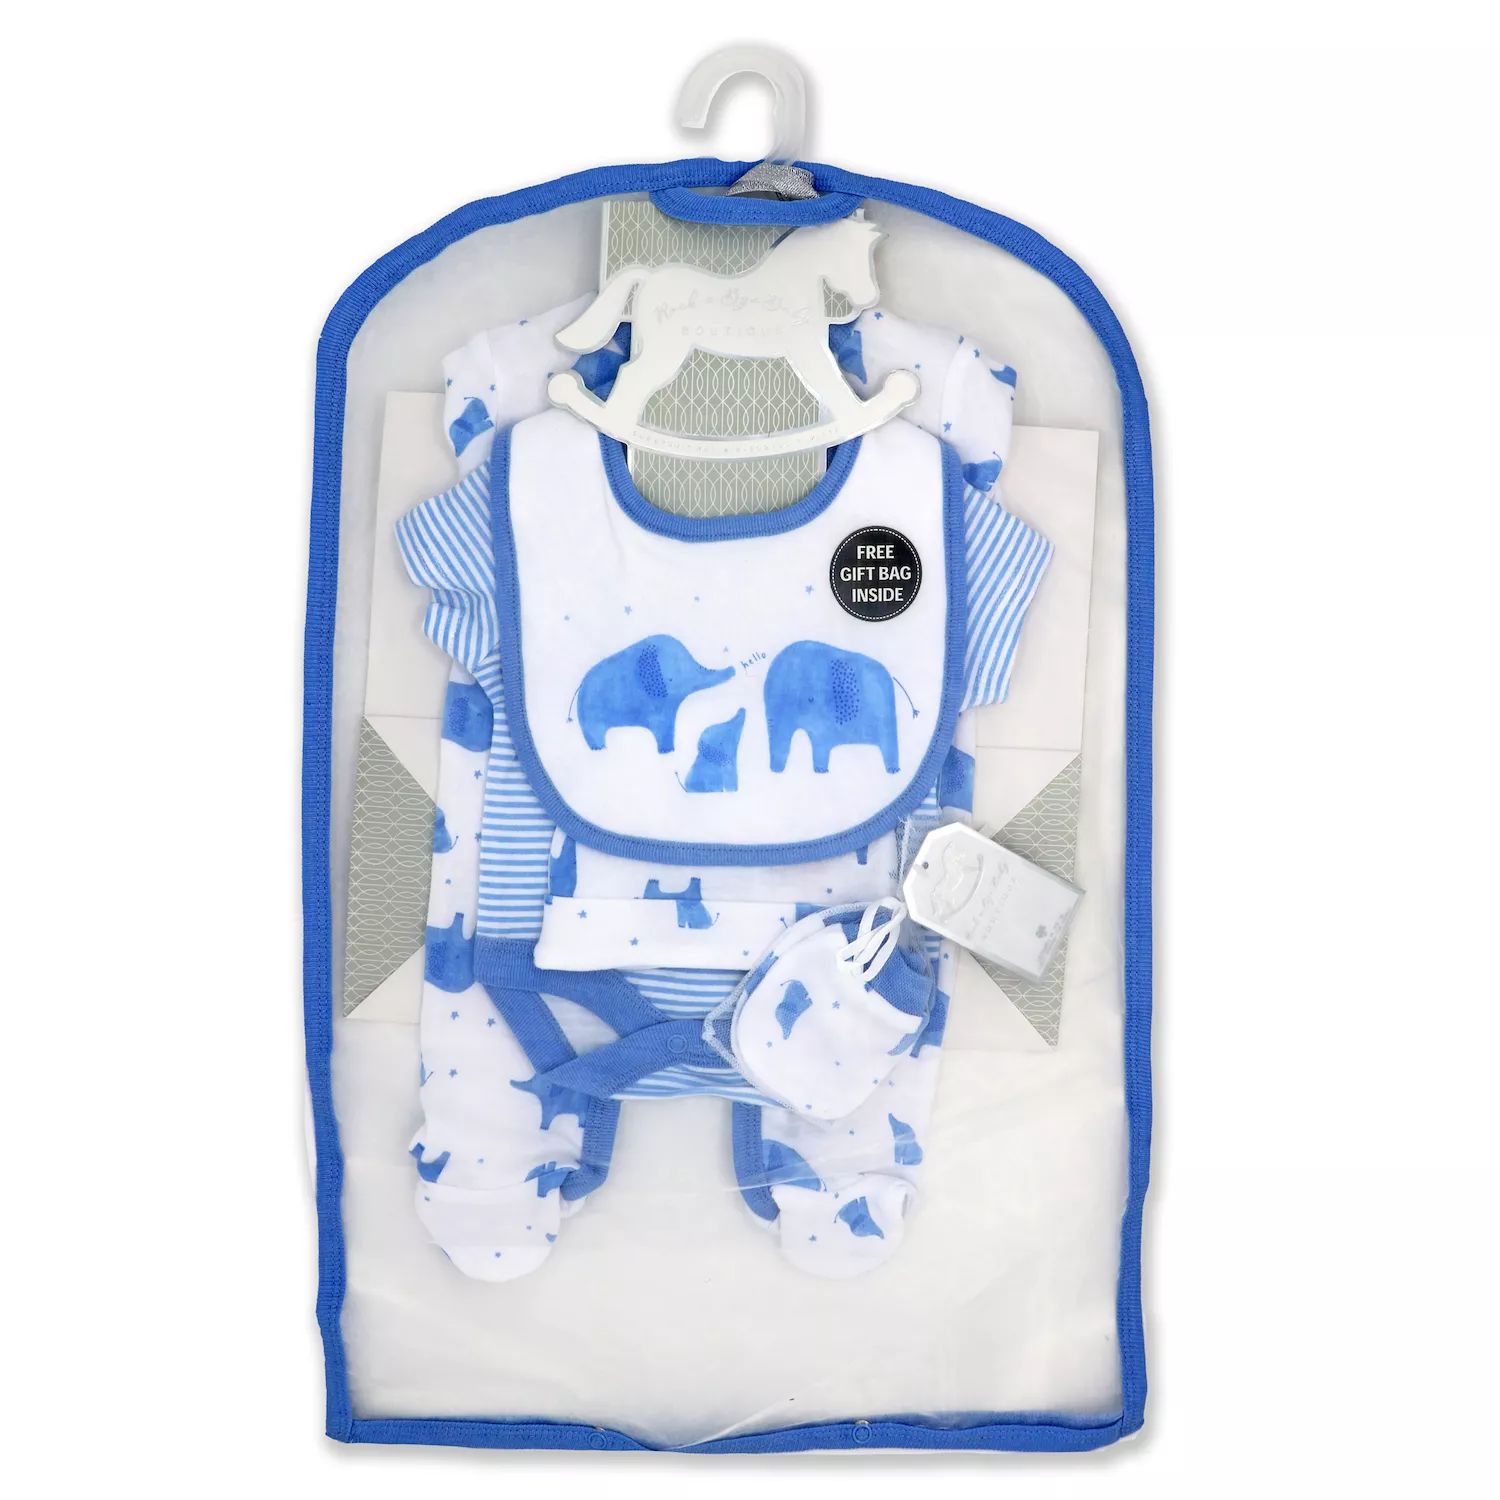 bye bye paris mother baby care bag hi̇gh quality warranty period month 12 Подарочный набор «Синие слоны» для маленьких мальчиков из 5 предметов в сетчатой ​​сумке Rock A Bye Baby Boutique